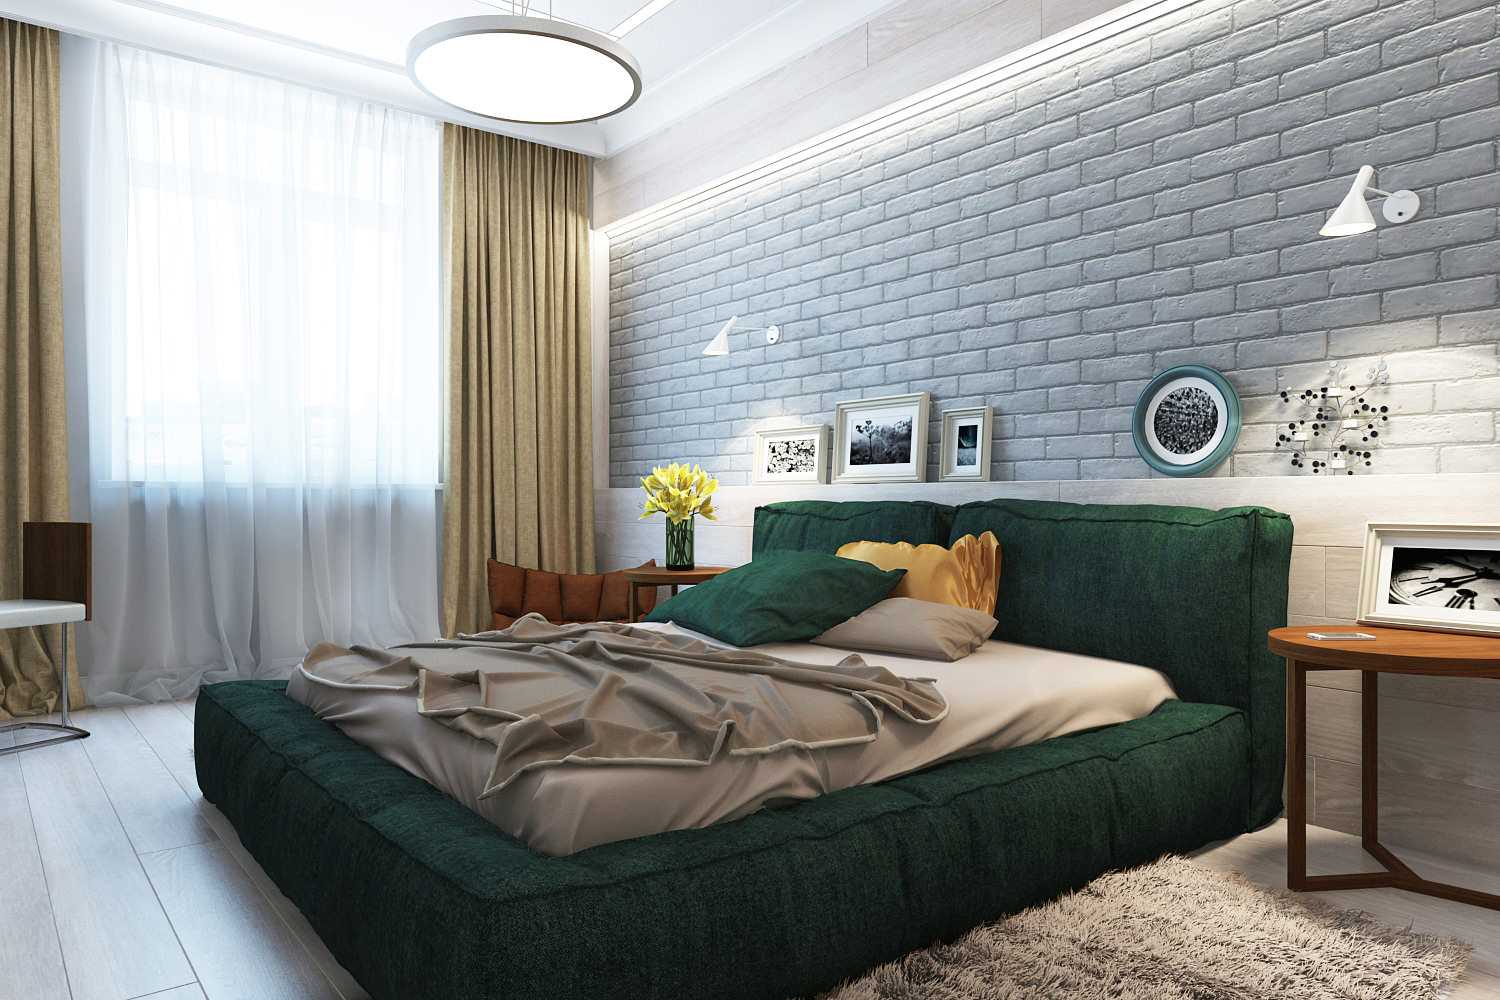 Tamnozeleni krevet u spavaćoj sobi s zidom od opeke